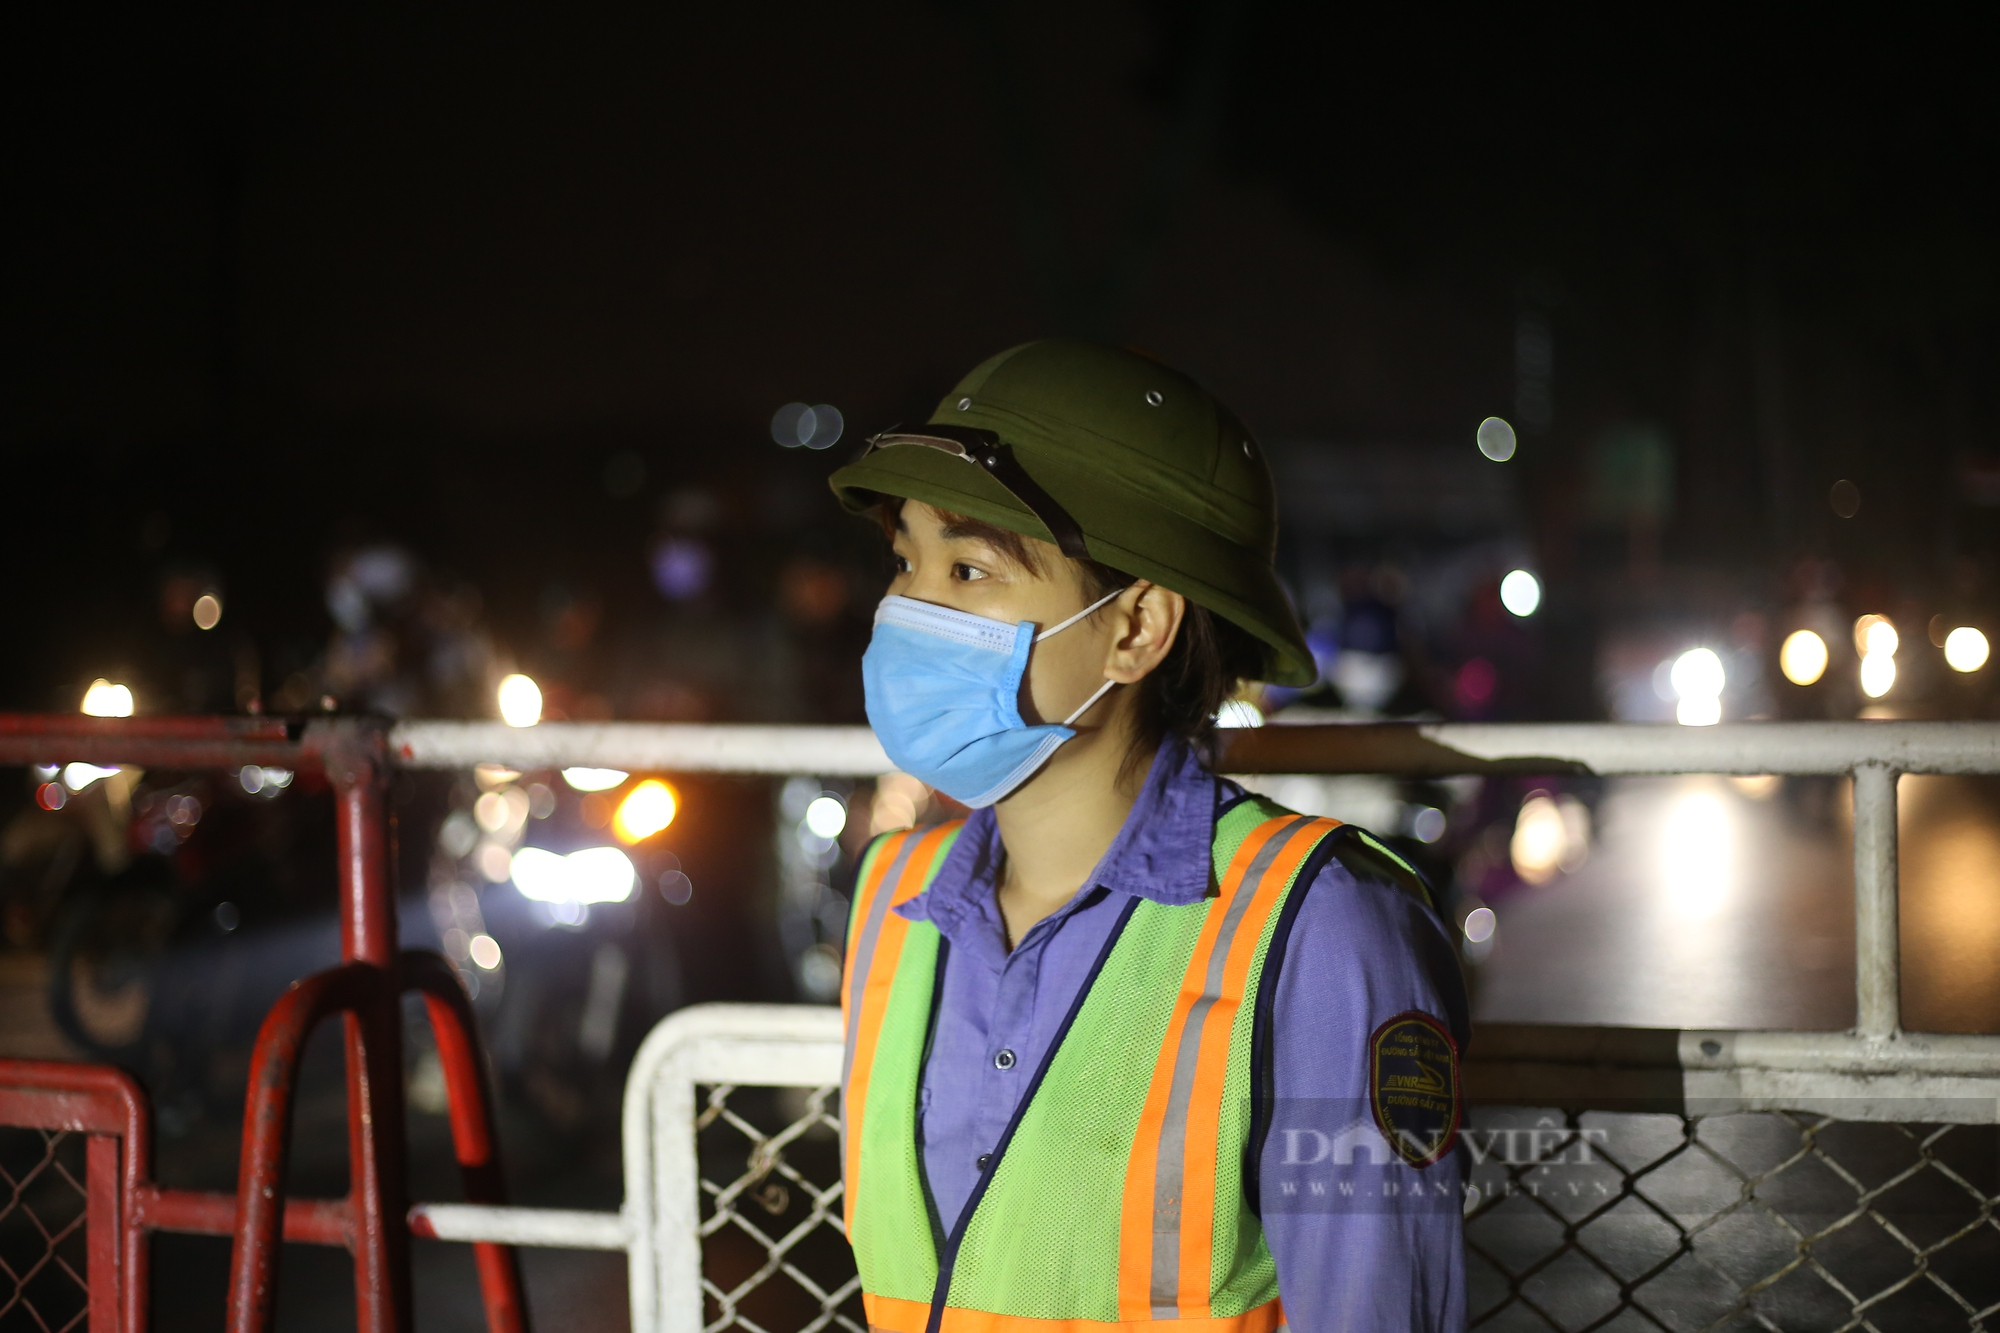 “Đêm trắng” với nữ nhân viên gác tàu hỏa ở Hà Nội - Ảnh 9.